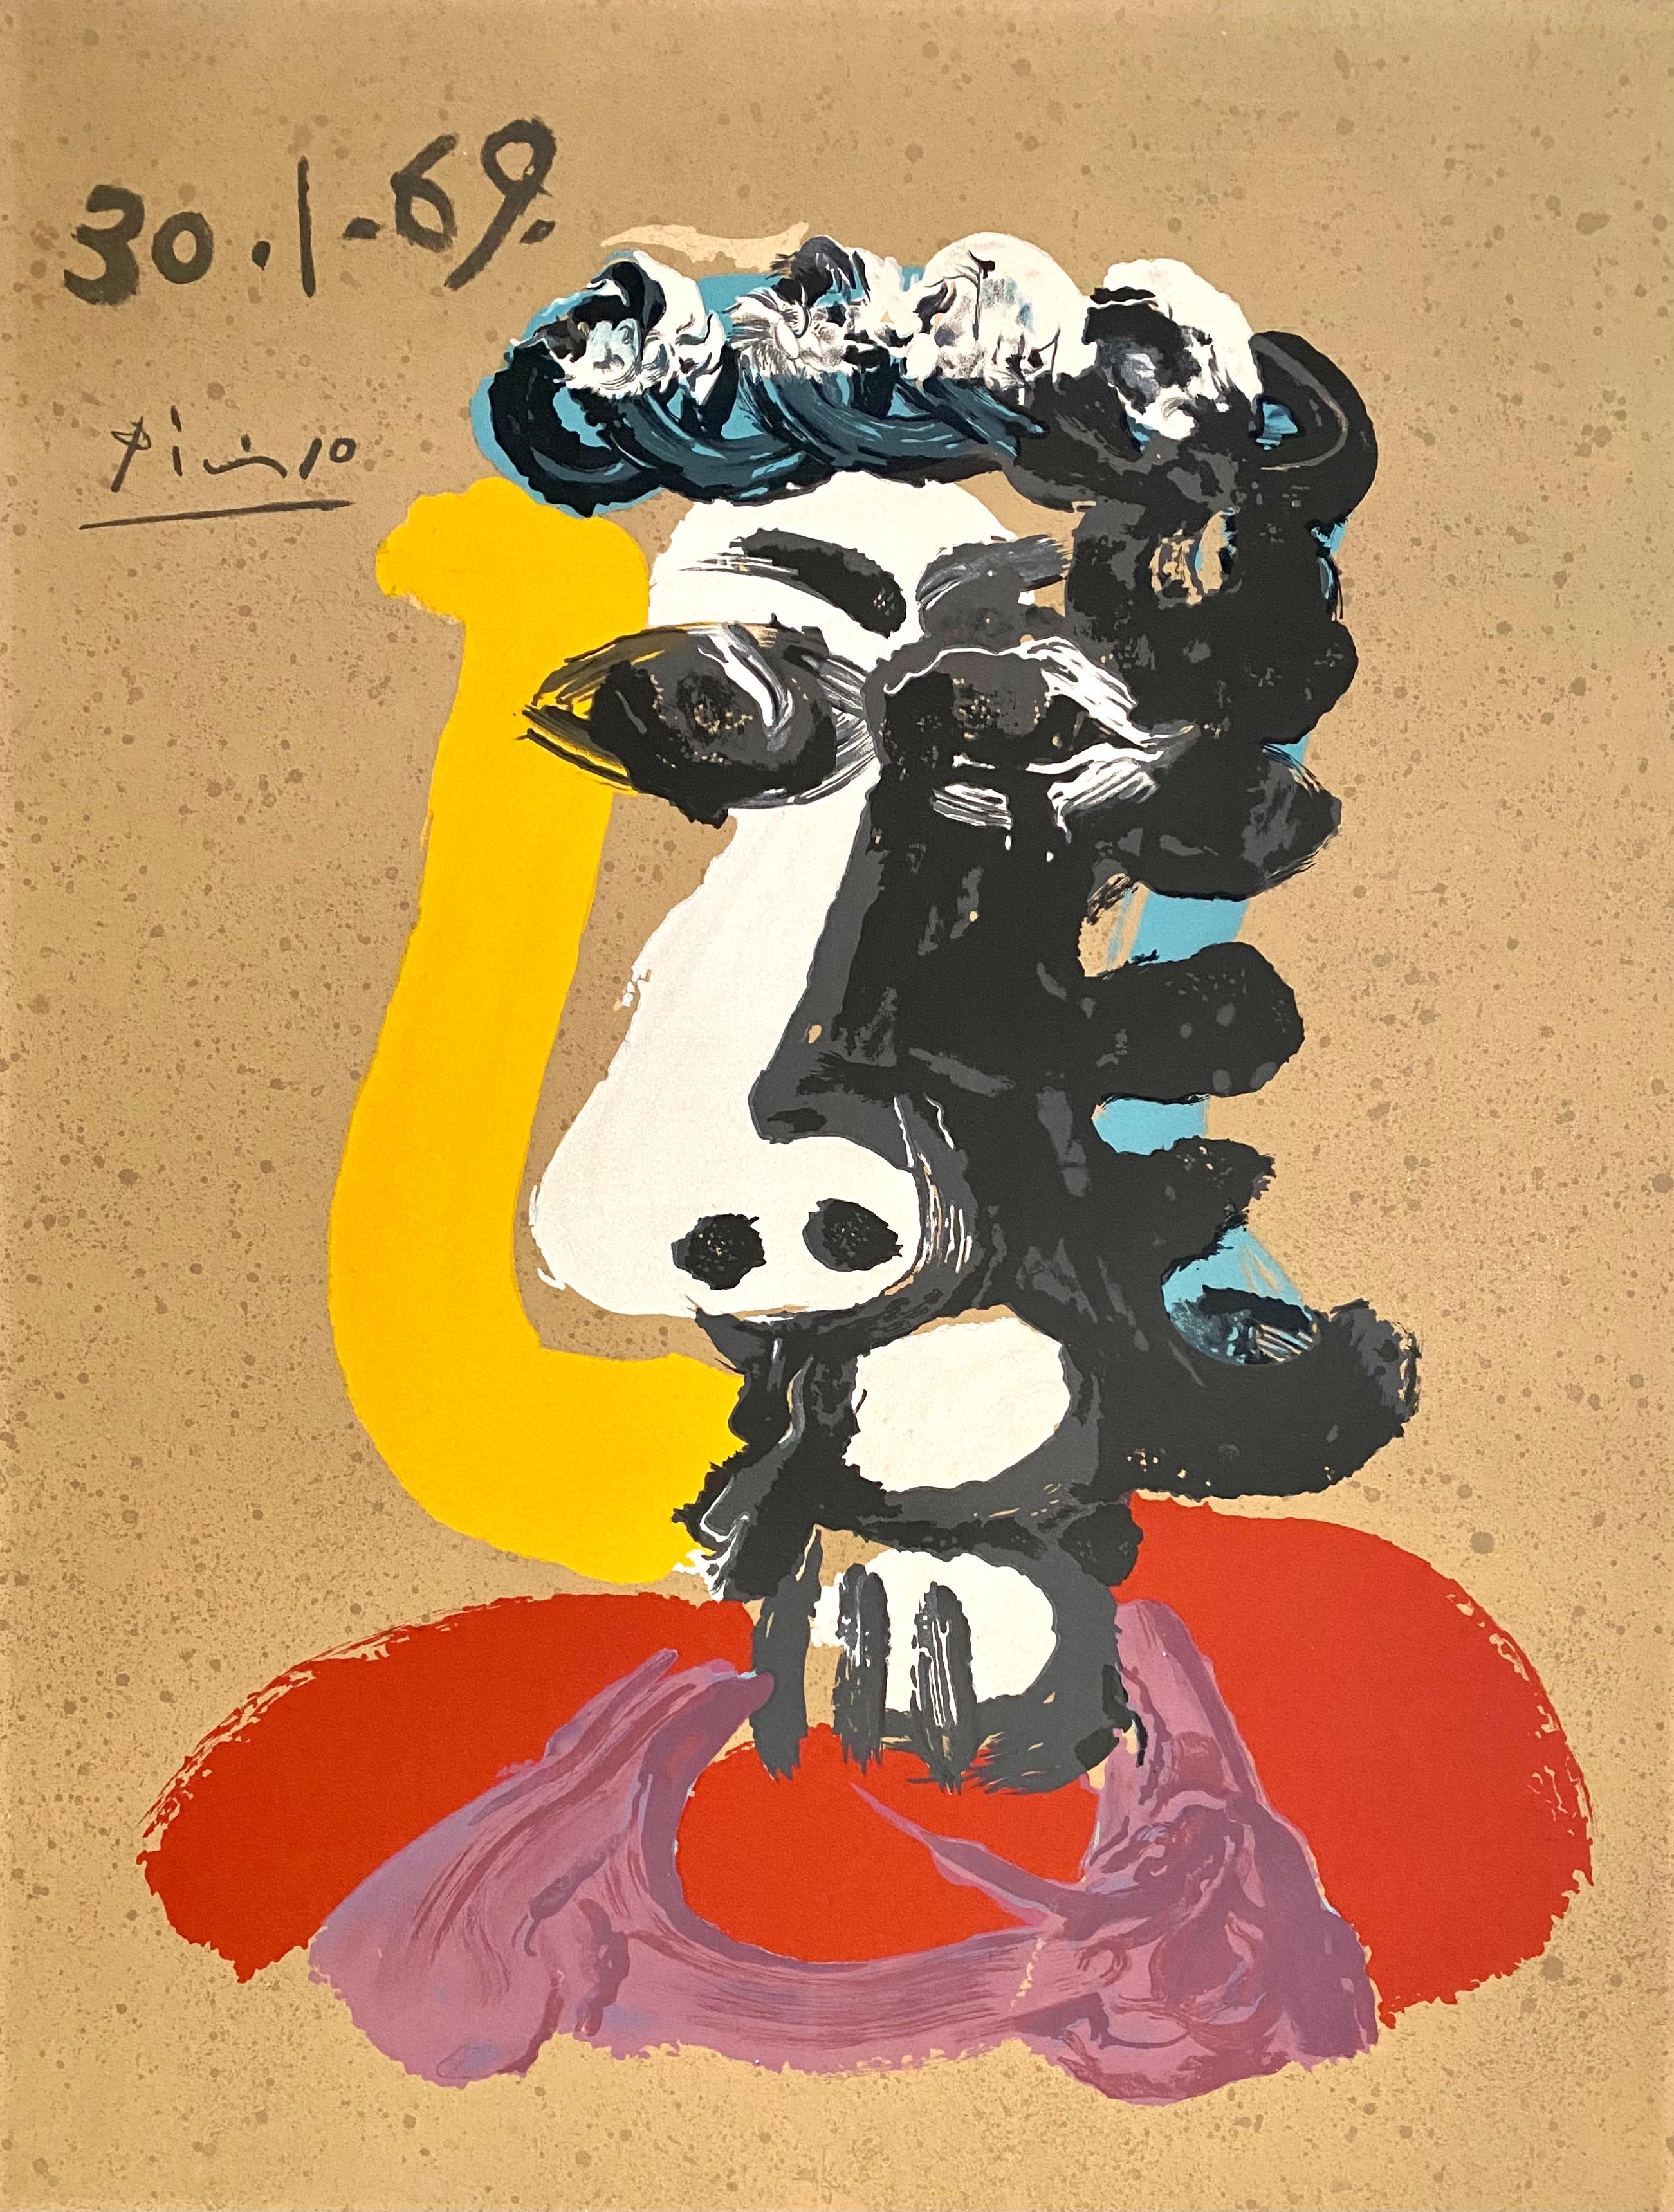 Pablo Picasso Portrait Print - Portrait Imaginaires 30.1.69